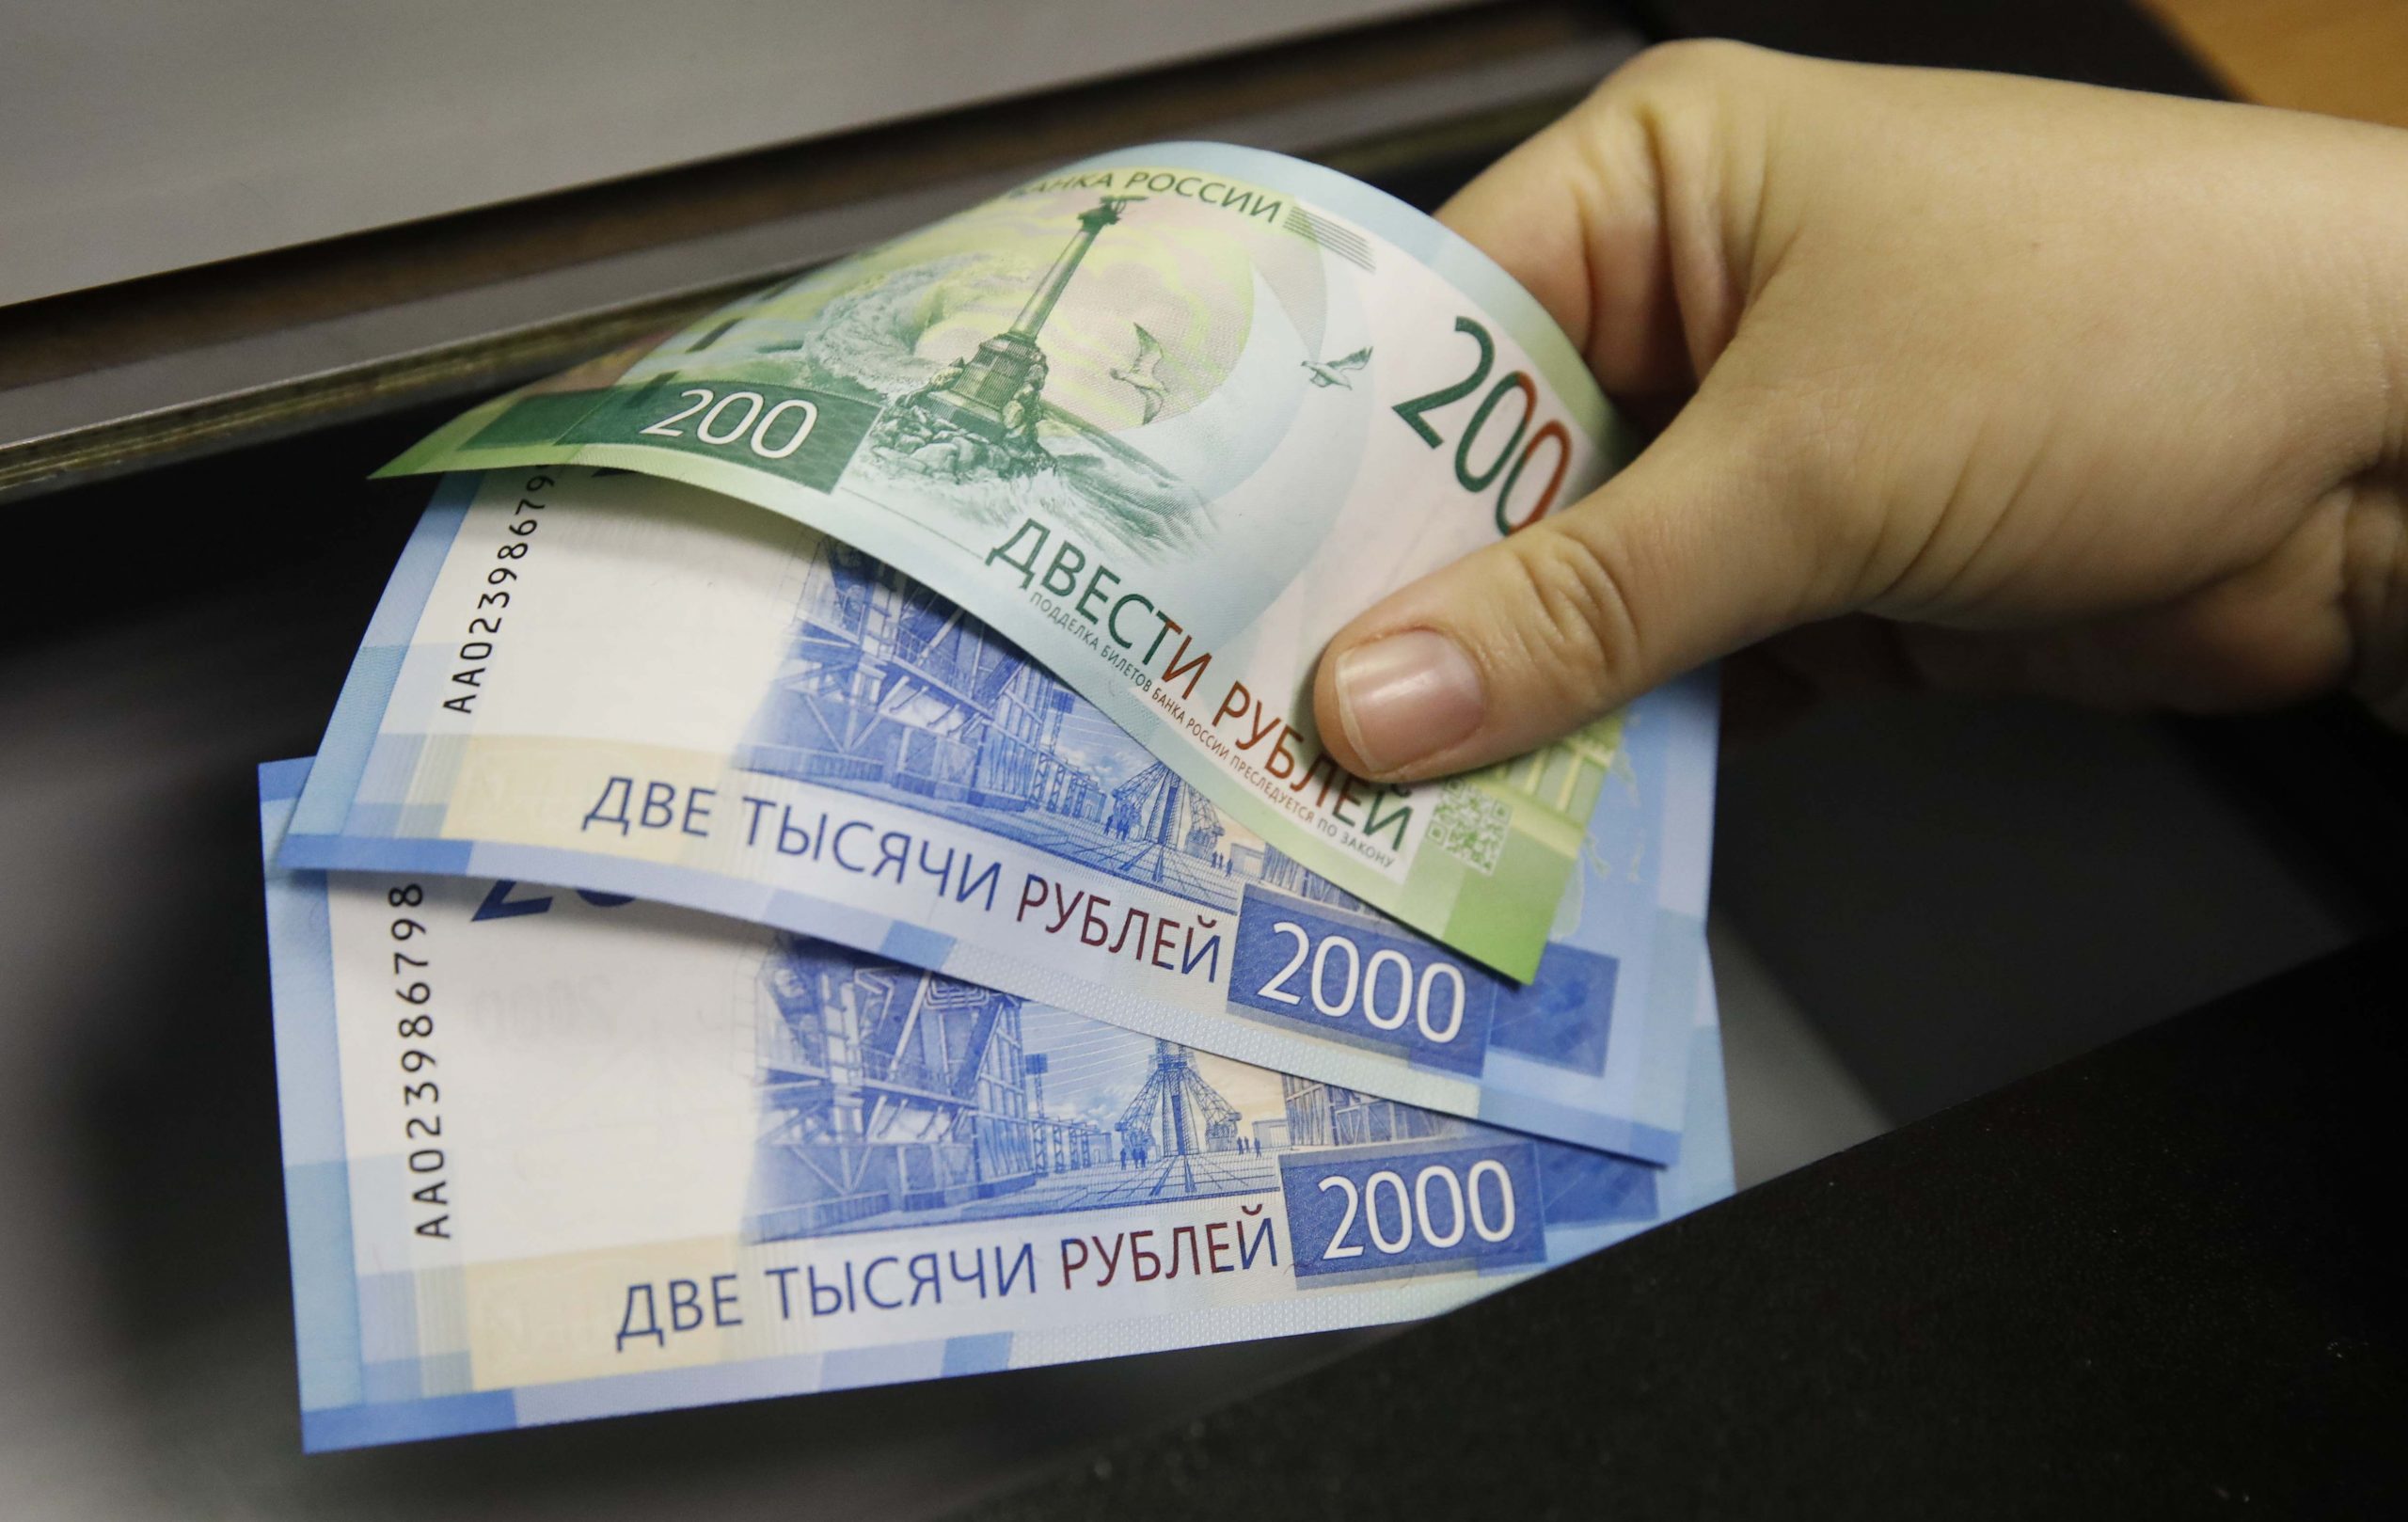 Ρωσικές εταιρείες σπεύδουν να ανοίξουν κινεζικούς τραπεζικούς λογαριασμούς